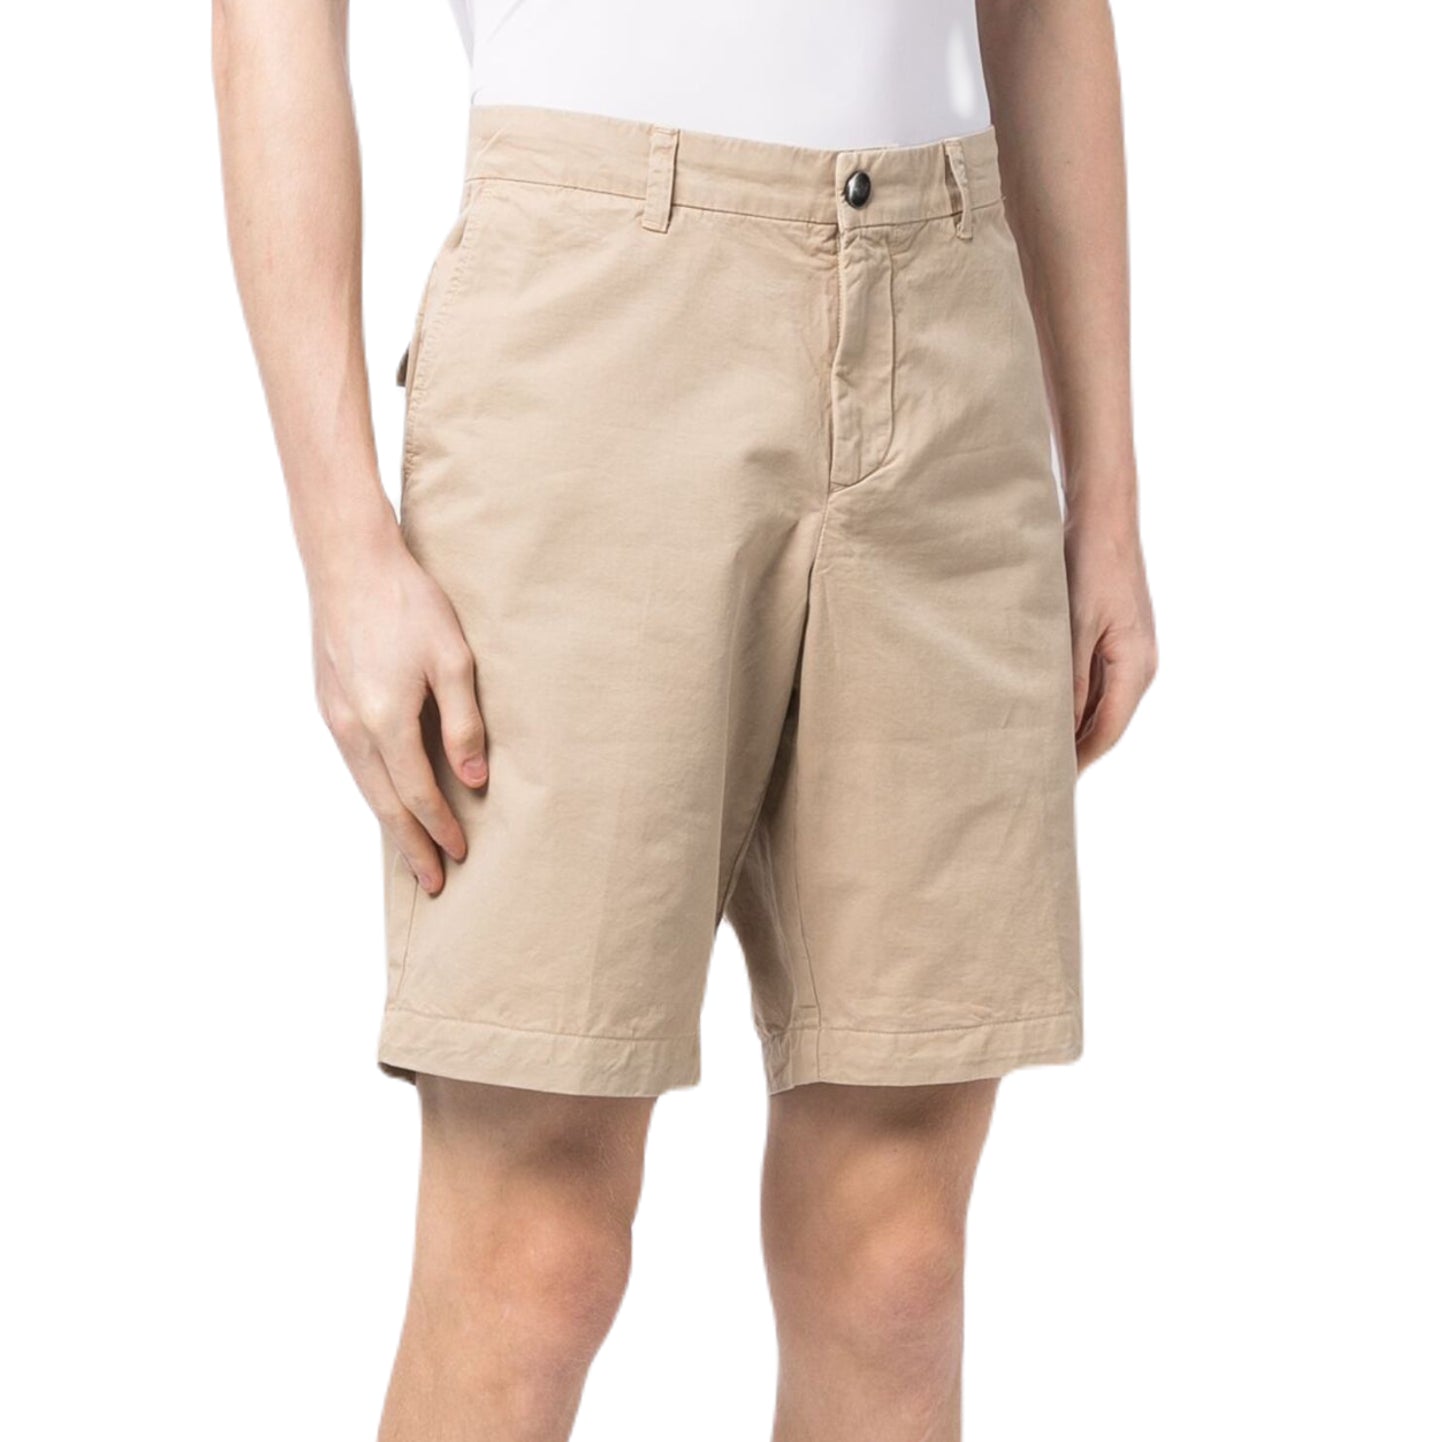 Emporio Armani 211824 Bermuda Shorts - 51 Beige - Escape Menswear